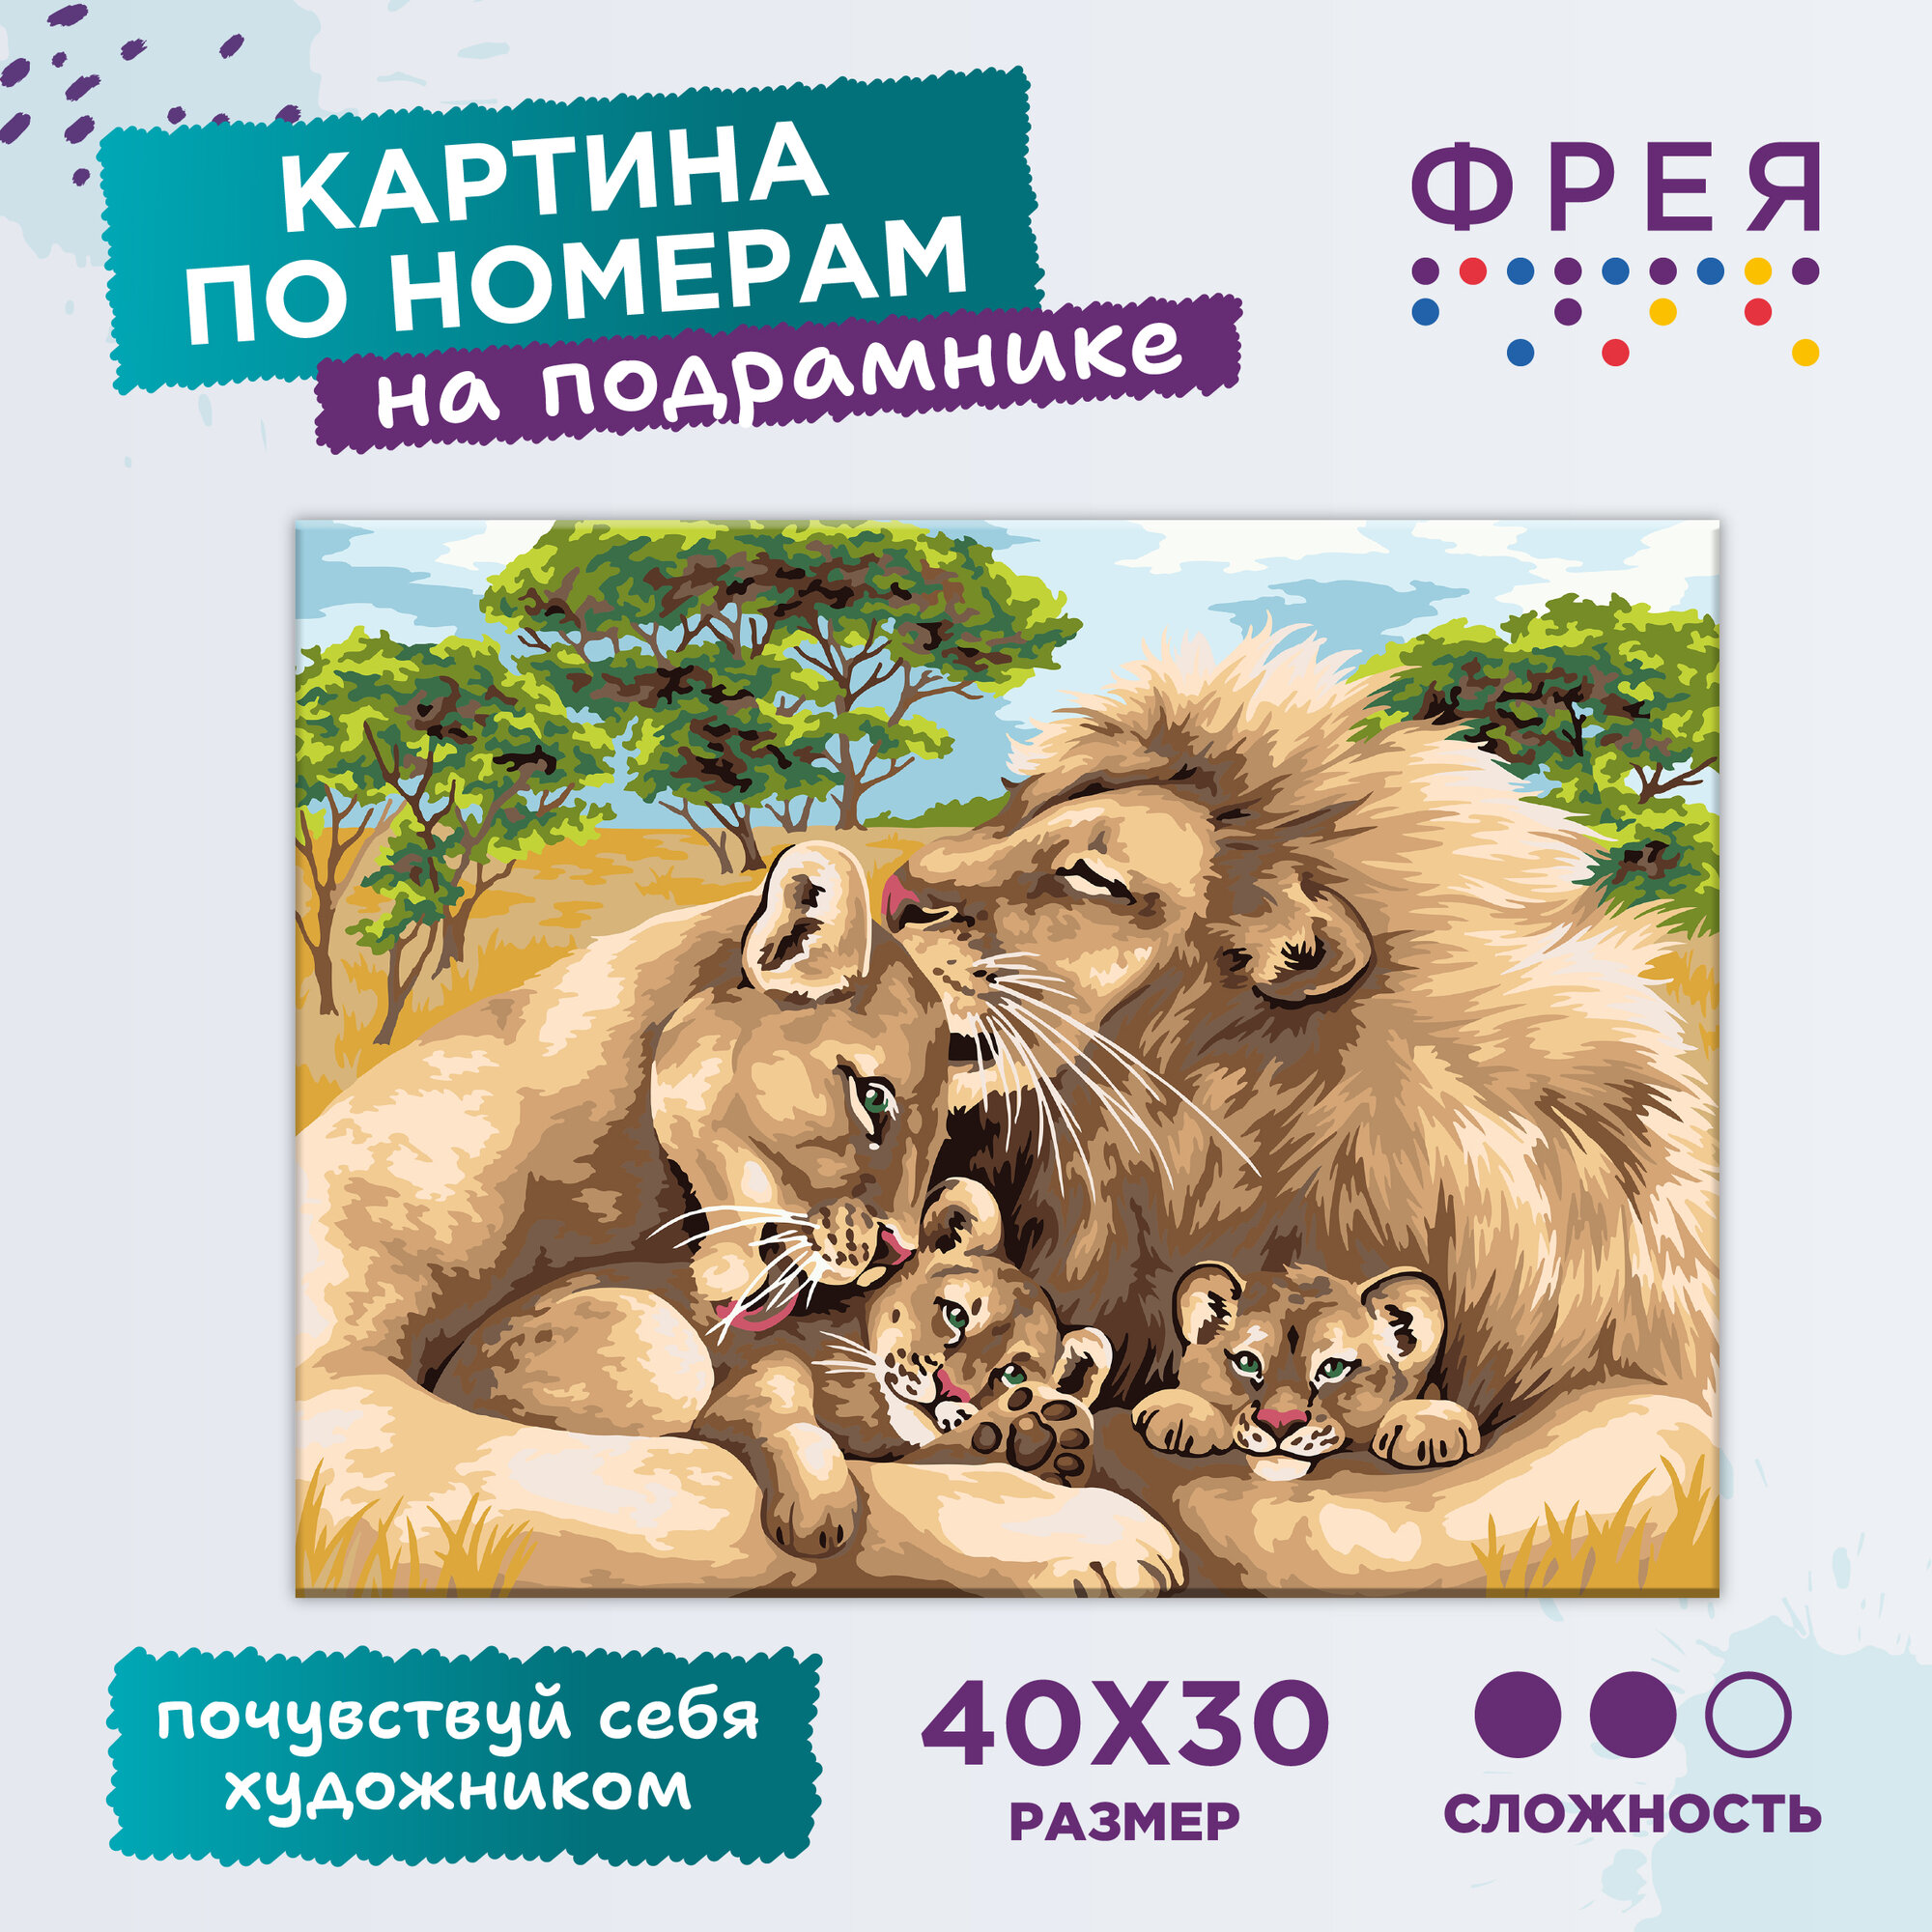 Картина по номерам с холстом на подрамнике "фрея" 40 x 30 см "Семья львов" PNB/PM-140